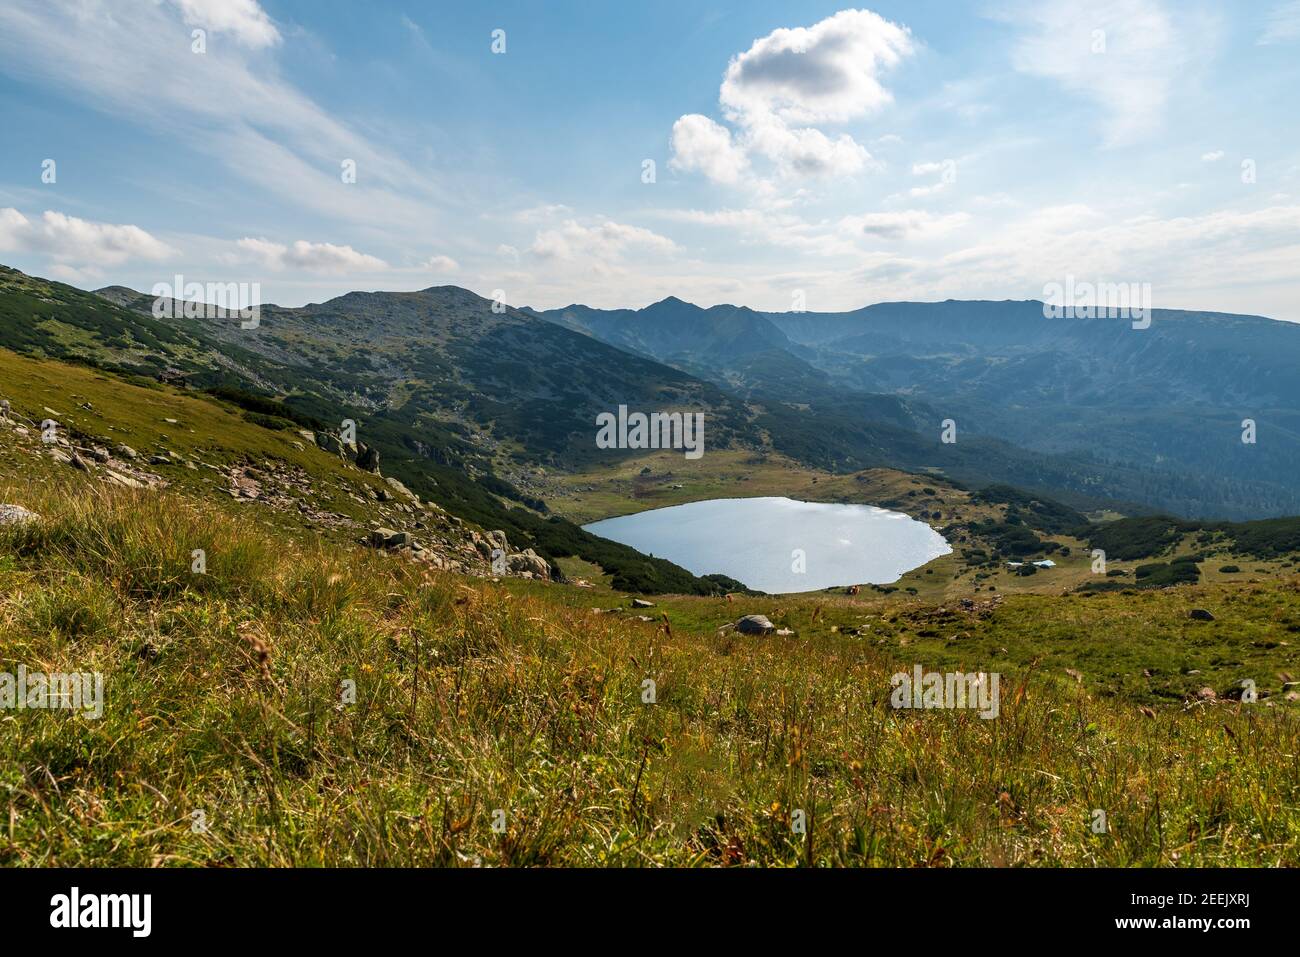 Retezat Berge mit Gipfeln und Zanoaga See in Rumänien während Schöner Sommertag Stockfoto